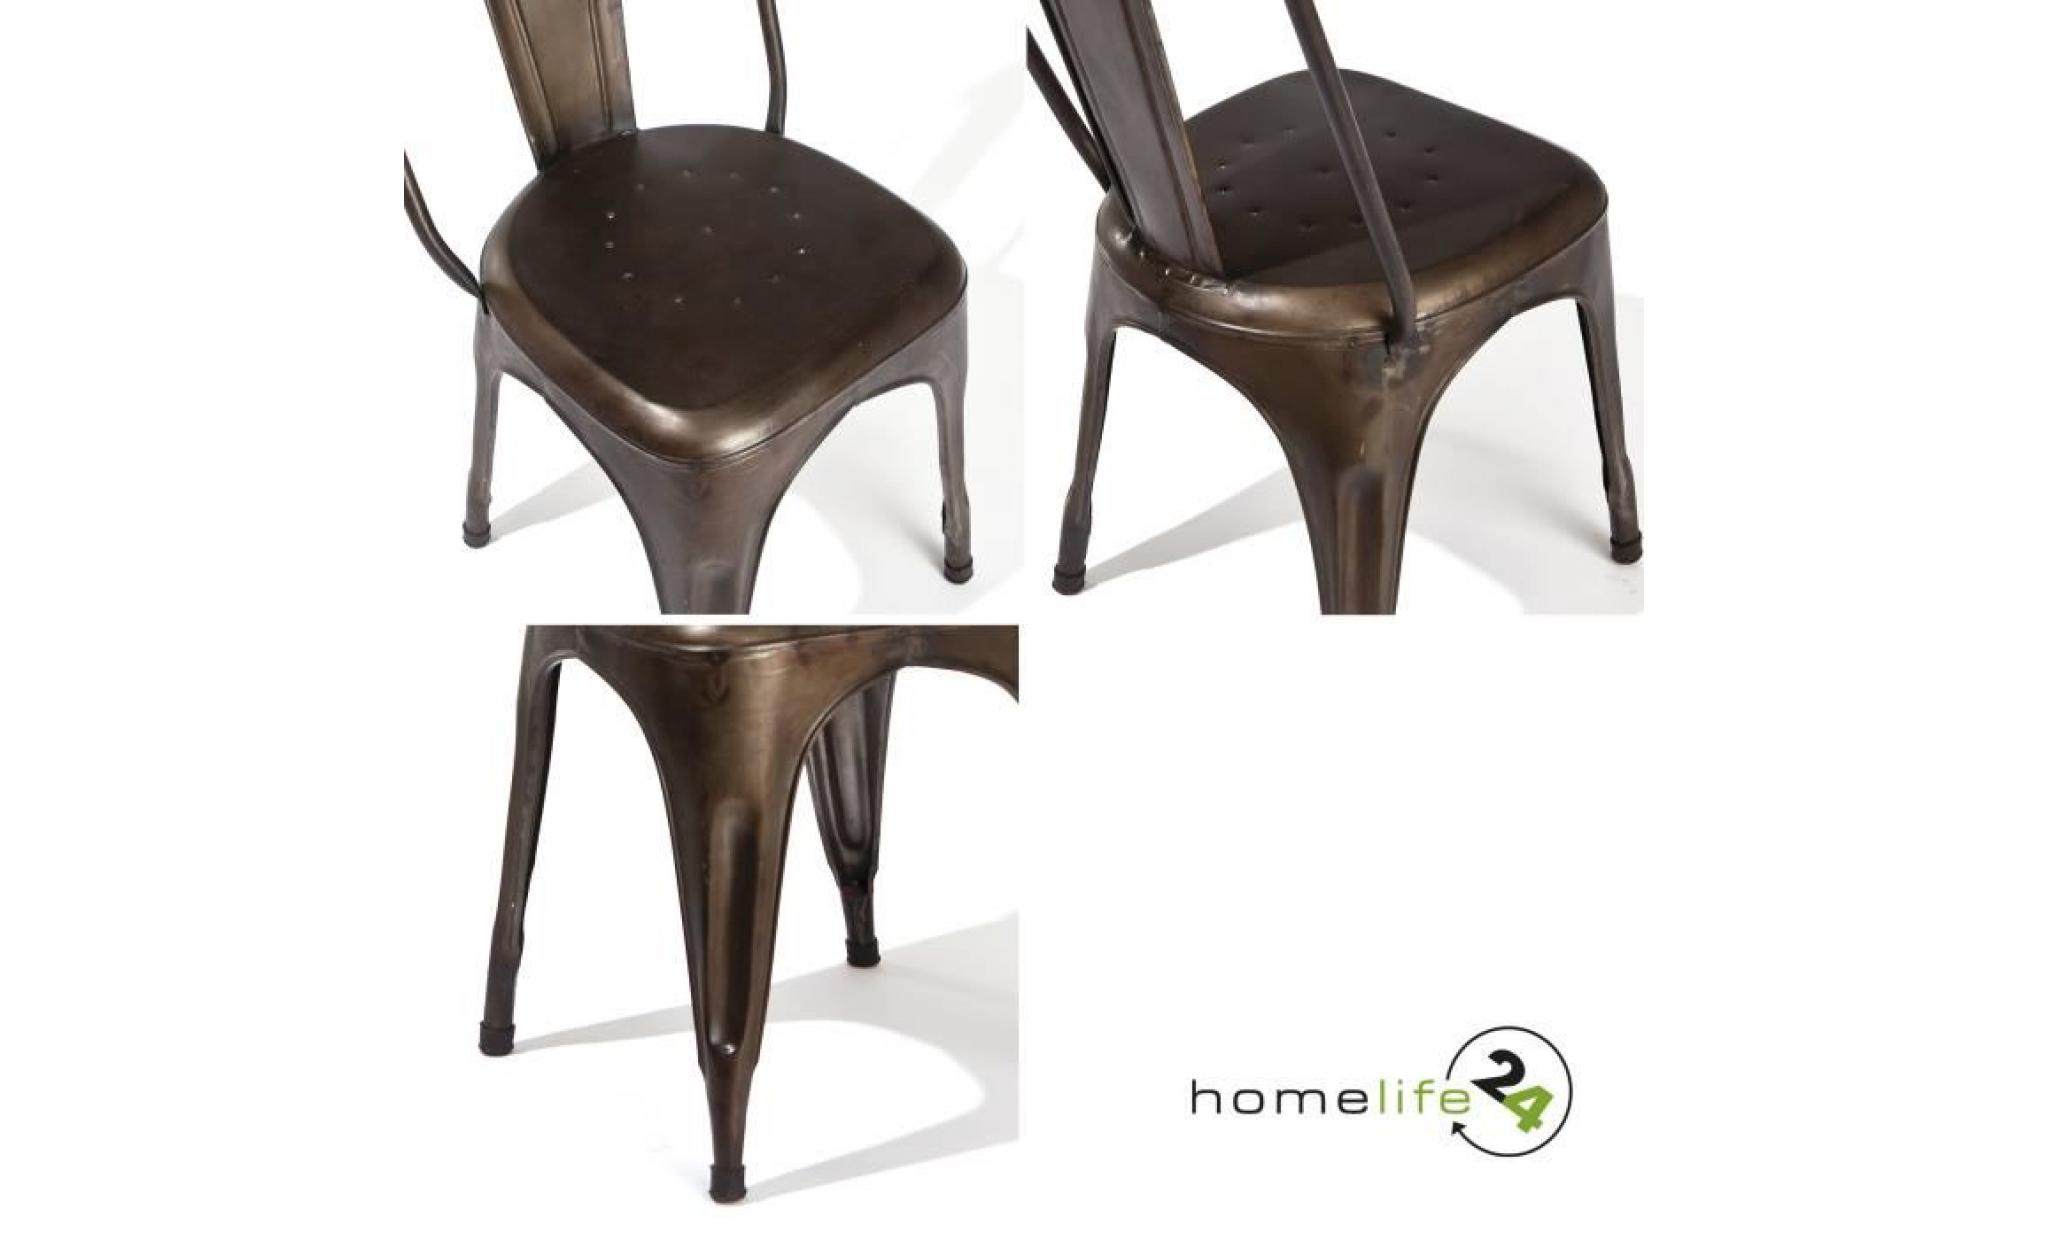 set de 4, chaise metal couleur, chaise design, chaise vintage, chaise industriel metal, chaise industrielle, chaise en fer, rouille pas cher